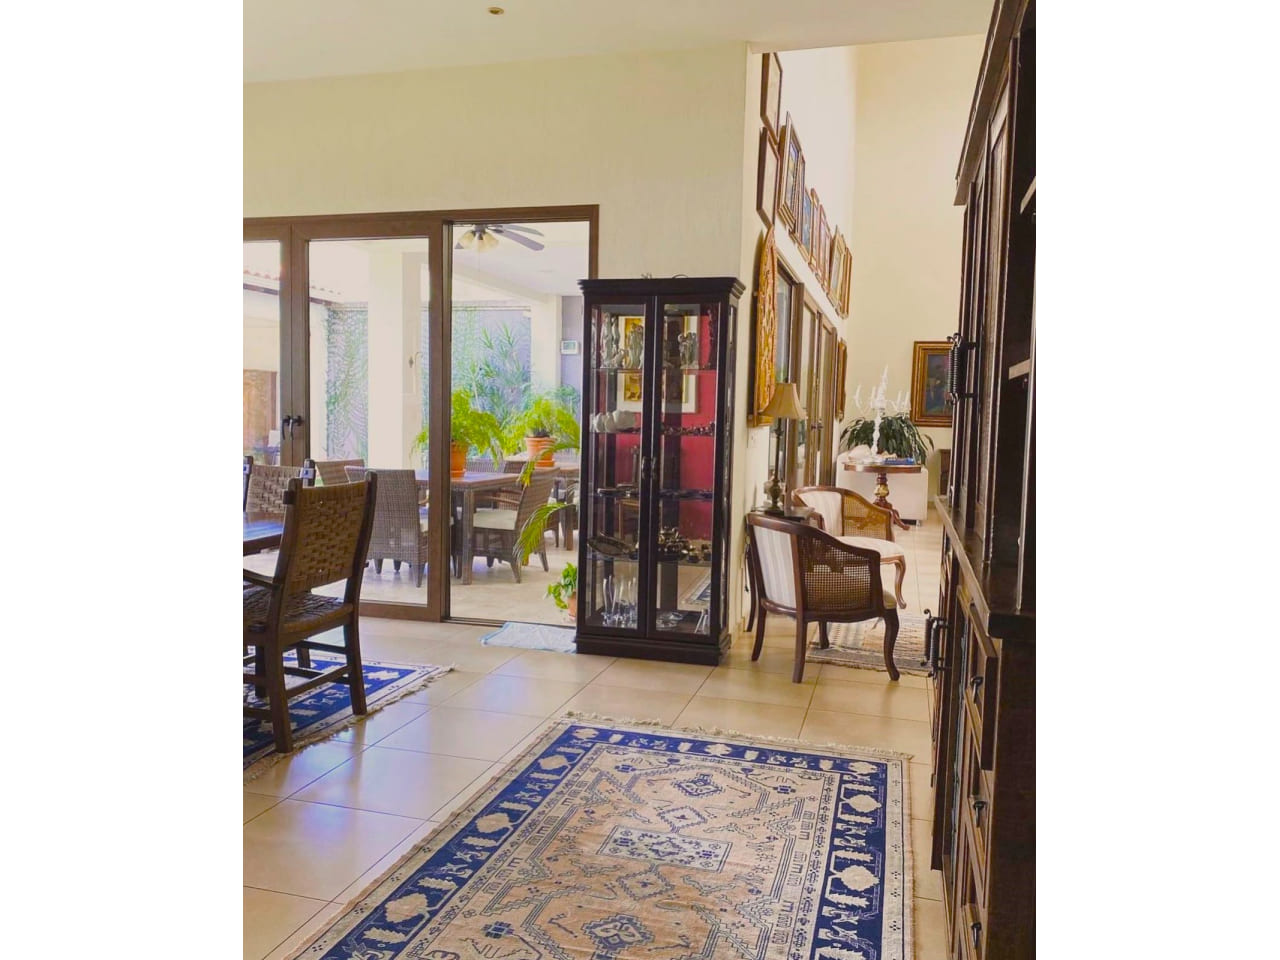 Pasillos de la casa en venta , con alfombla de color azul, mueble de madera con adornos de ceramica, junto al pasillo de la sala de estar y a la puerta del patio trasero.